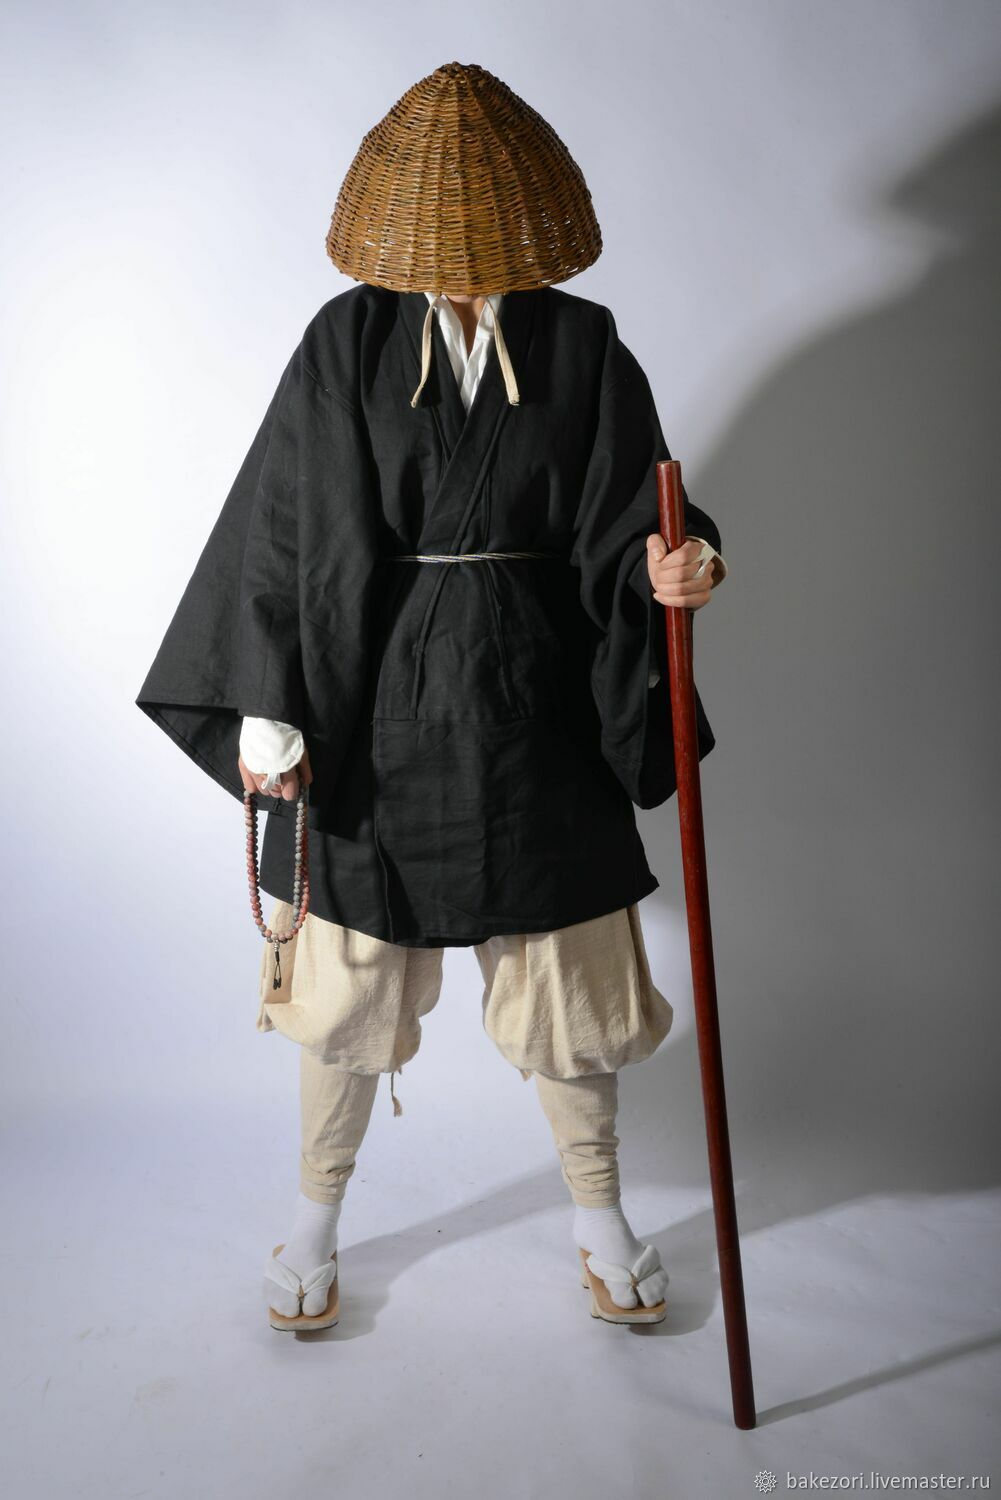 Амигаса головной убор самурая